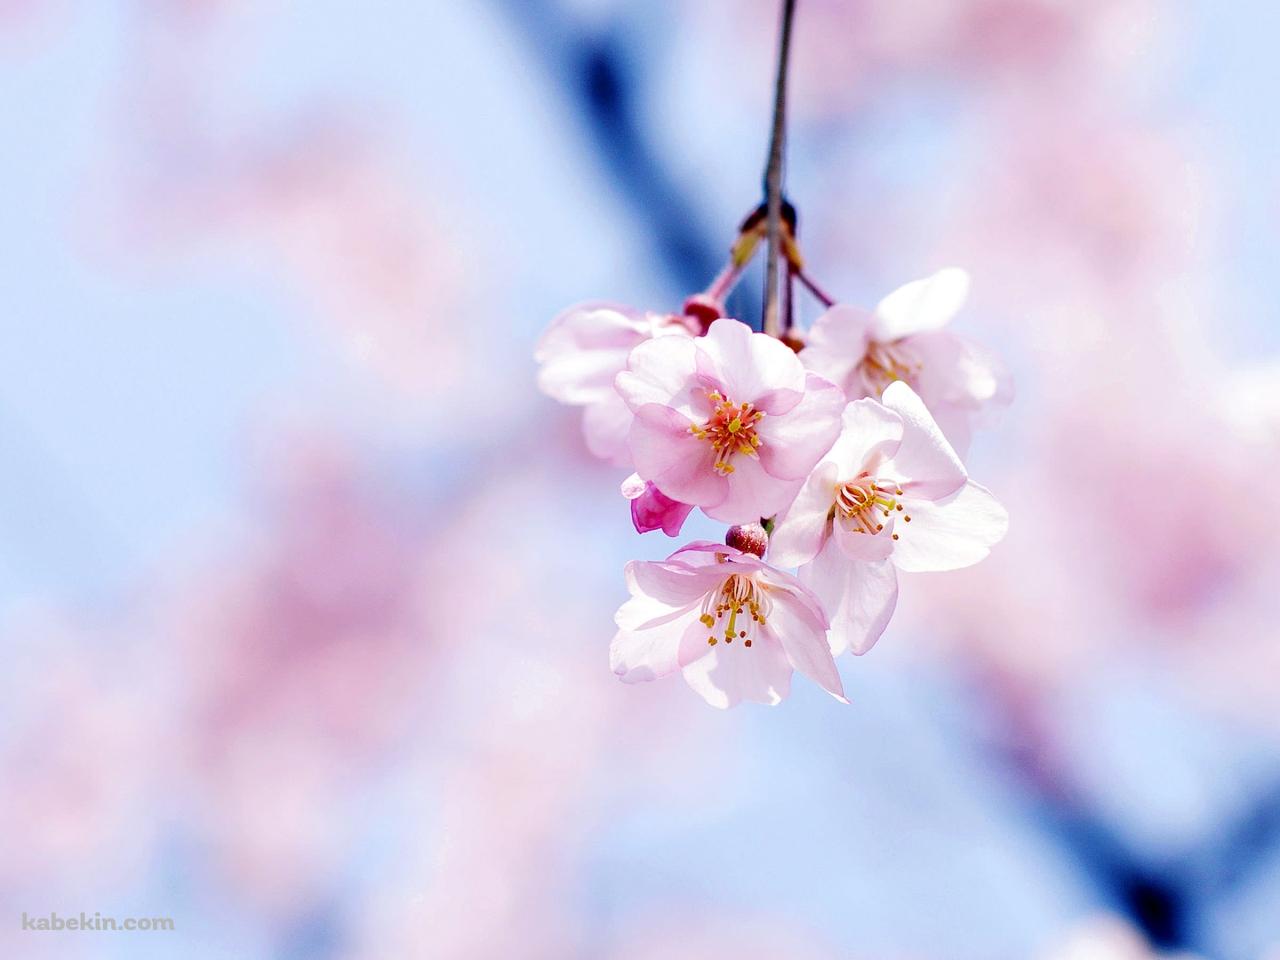 綺麗な桜の花の壁紙(1280px x 960px) 高画質 PC・デスクトップ用